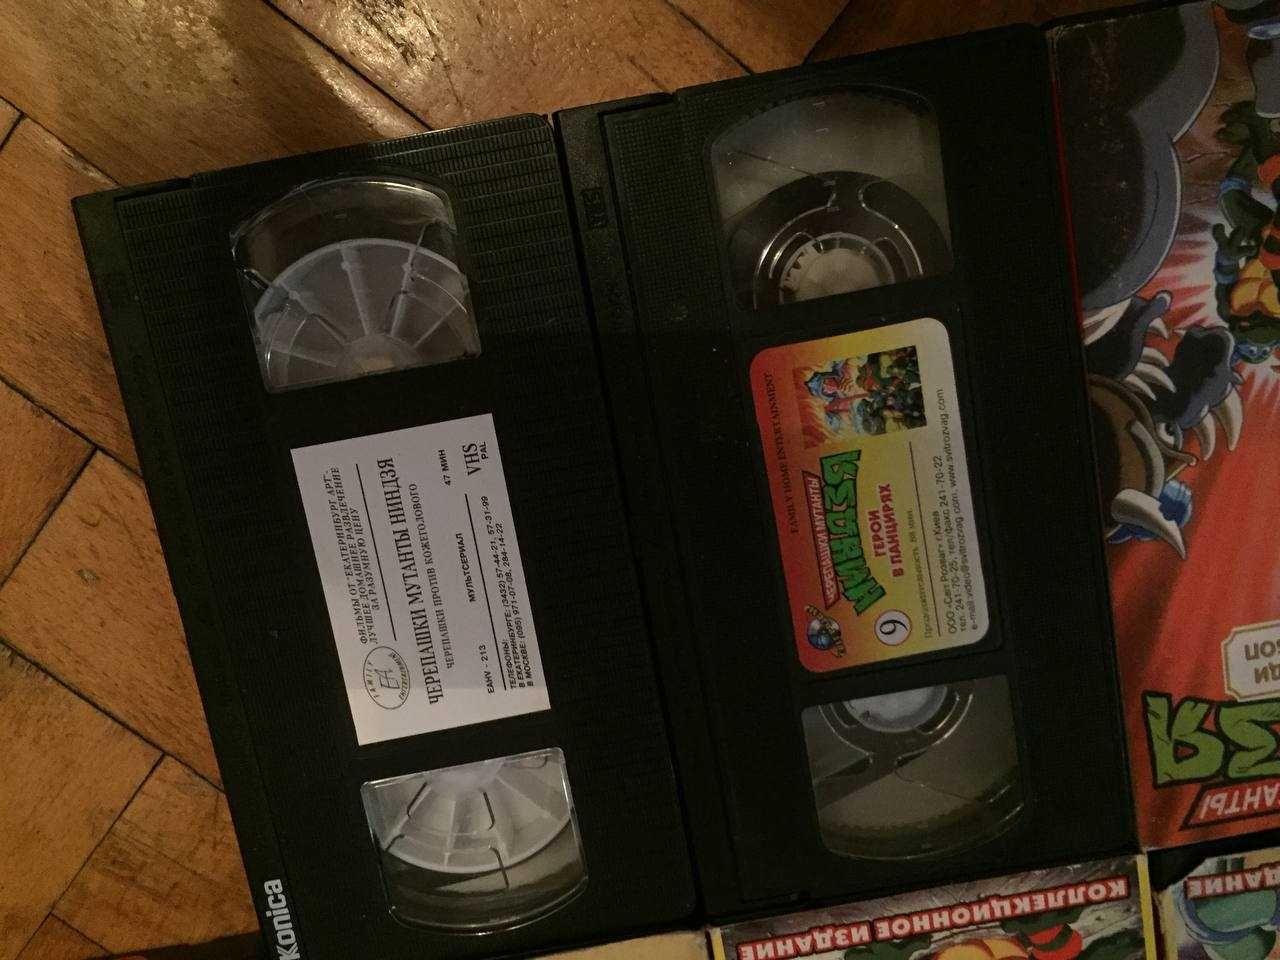 Видеокассеты VHS Черепашки-ниндзя, Человек-паук, Ожившие мумии, Спаун